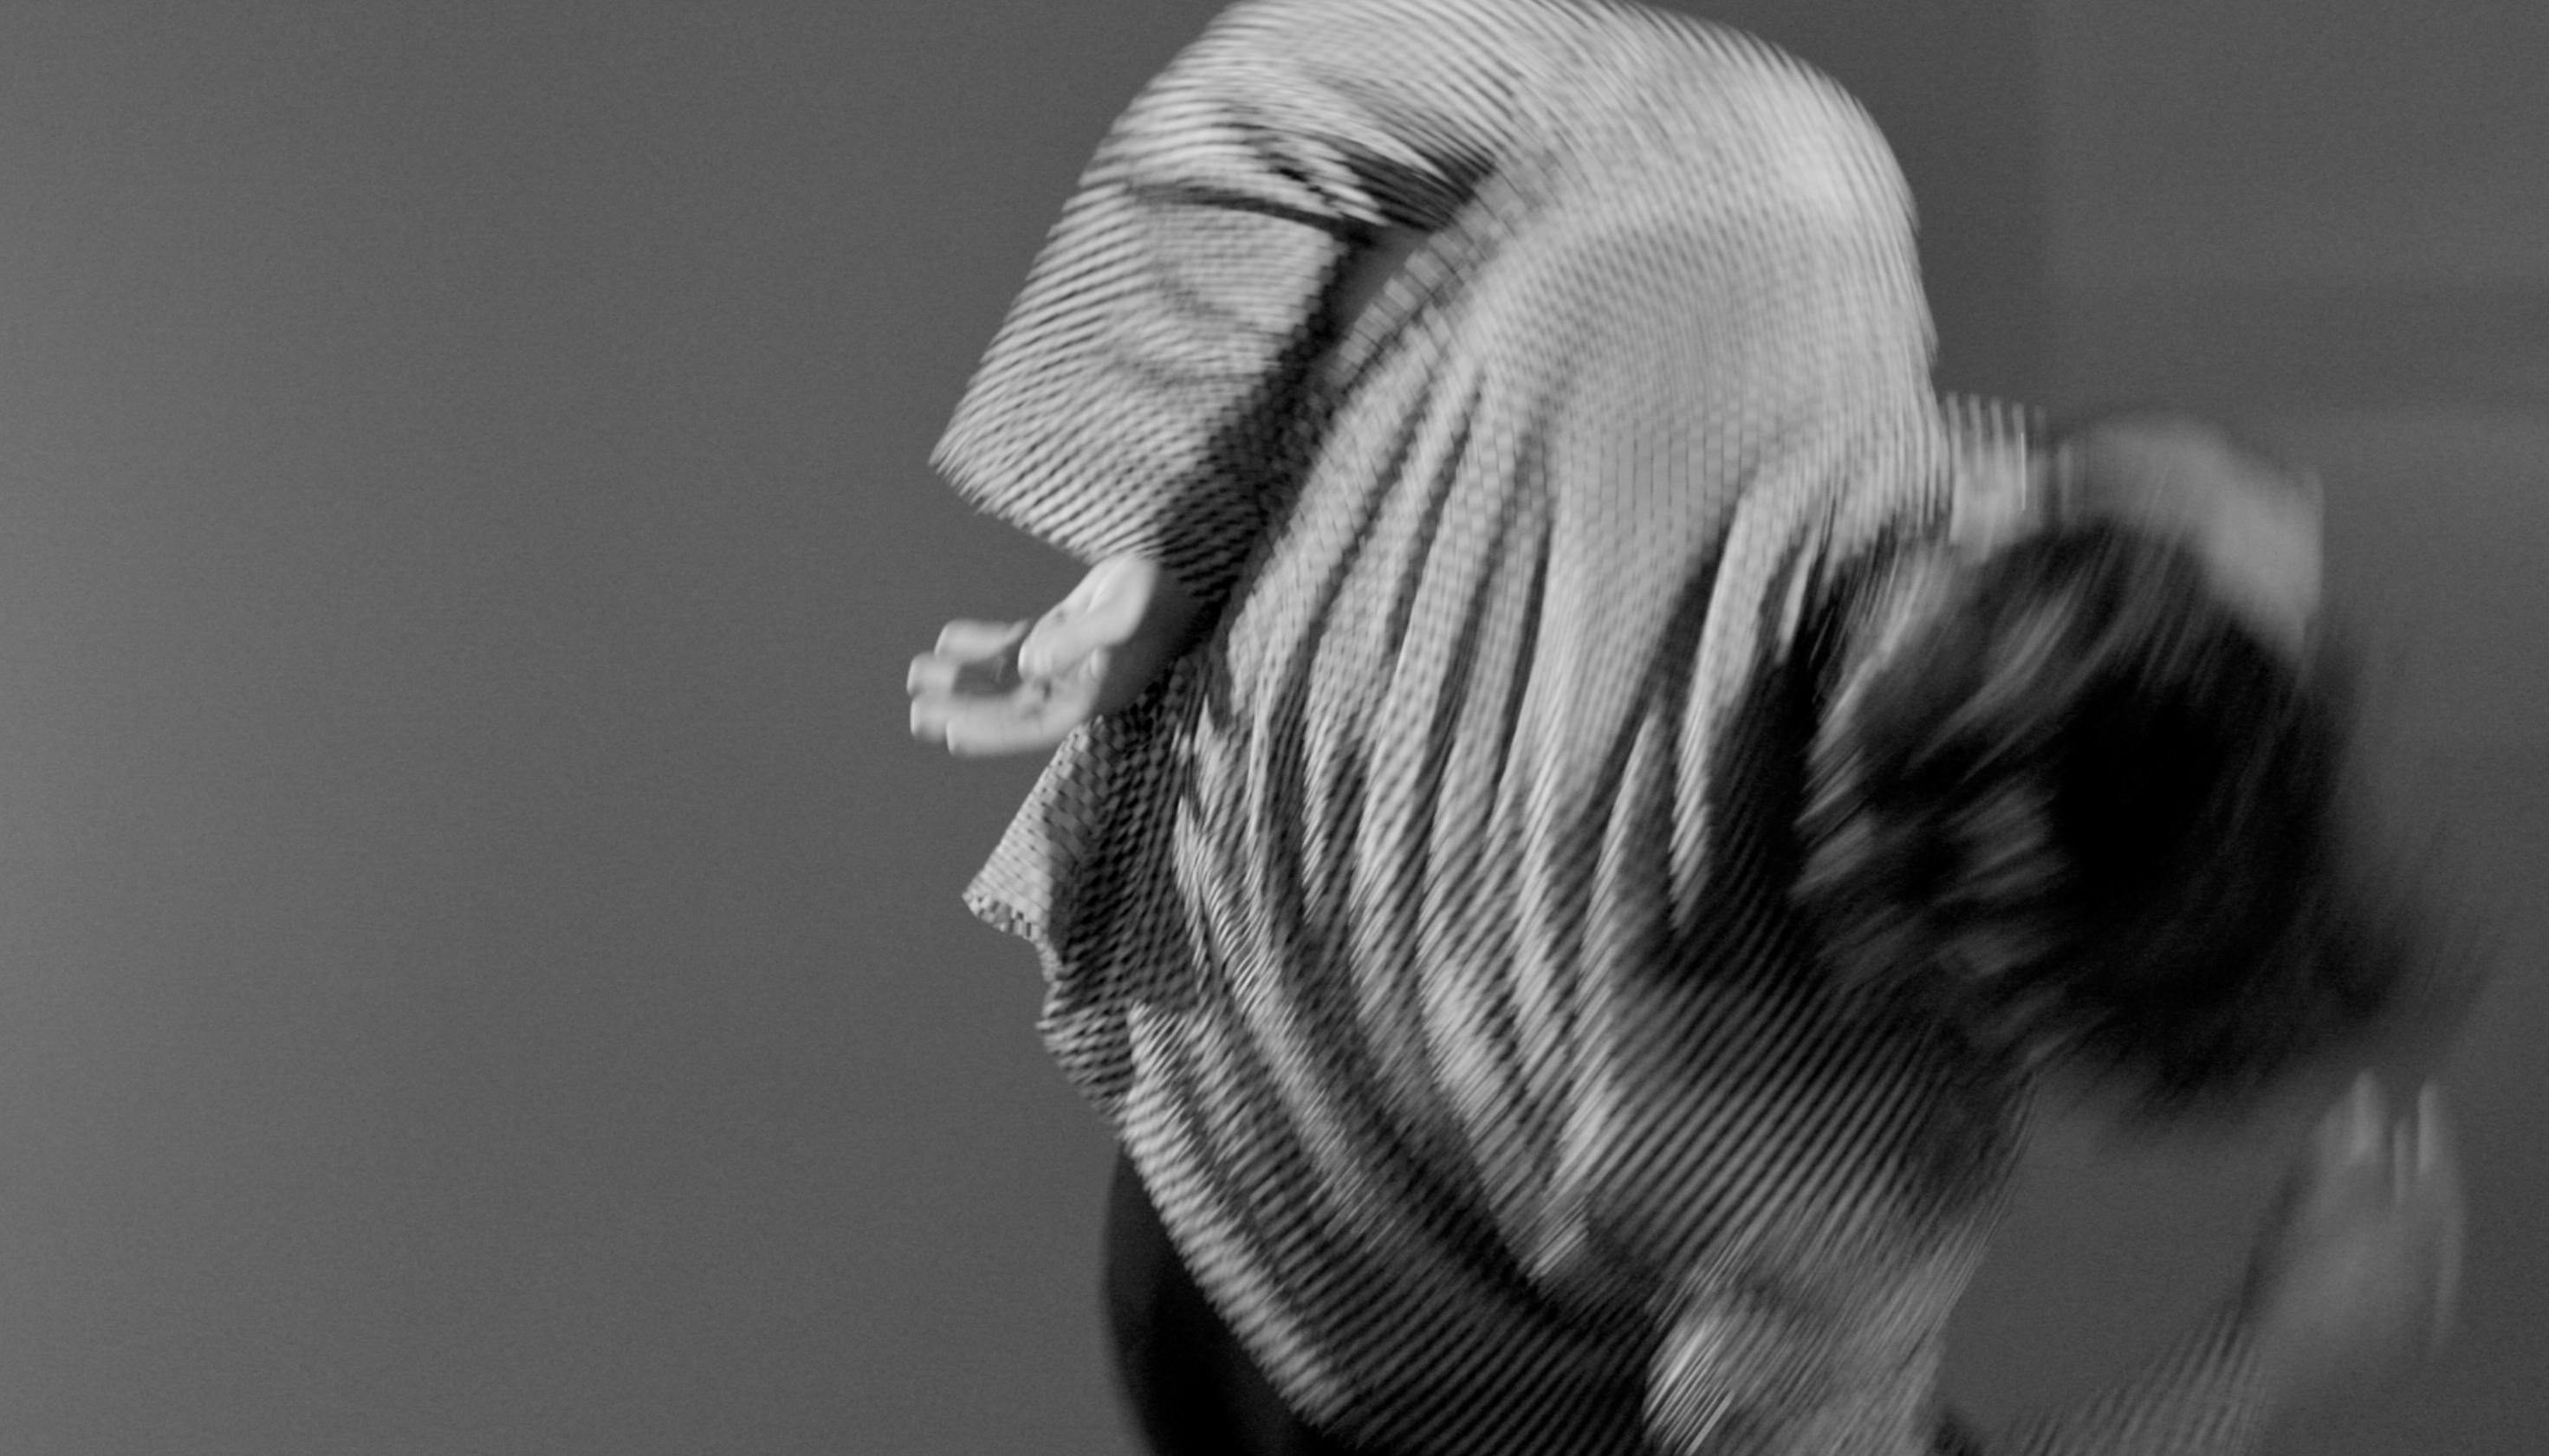 Simone Donati in una foto in bianco e nero sfuocata da le spalle all'obbiettivo